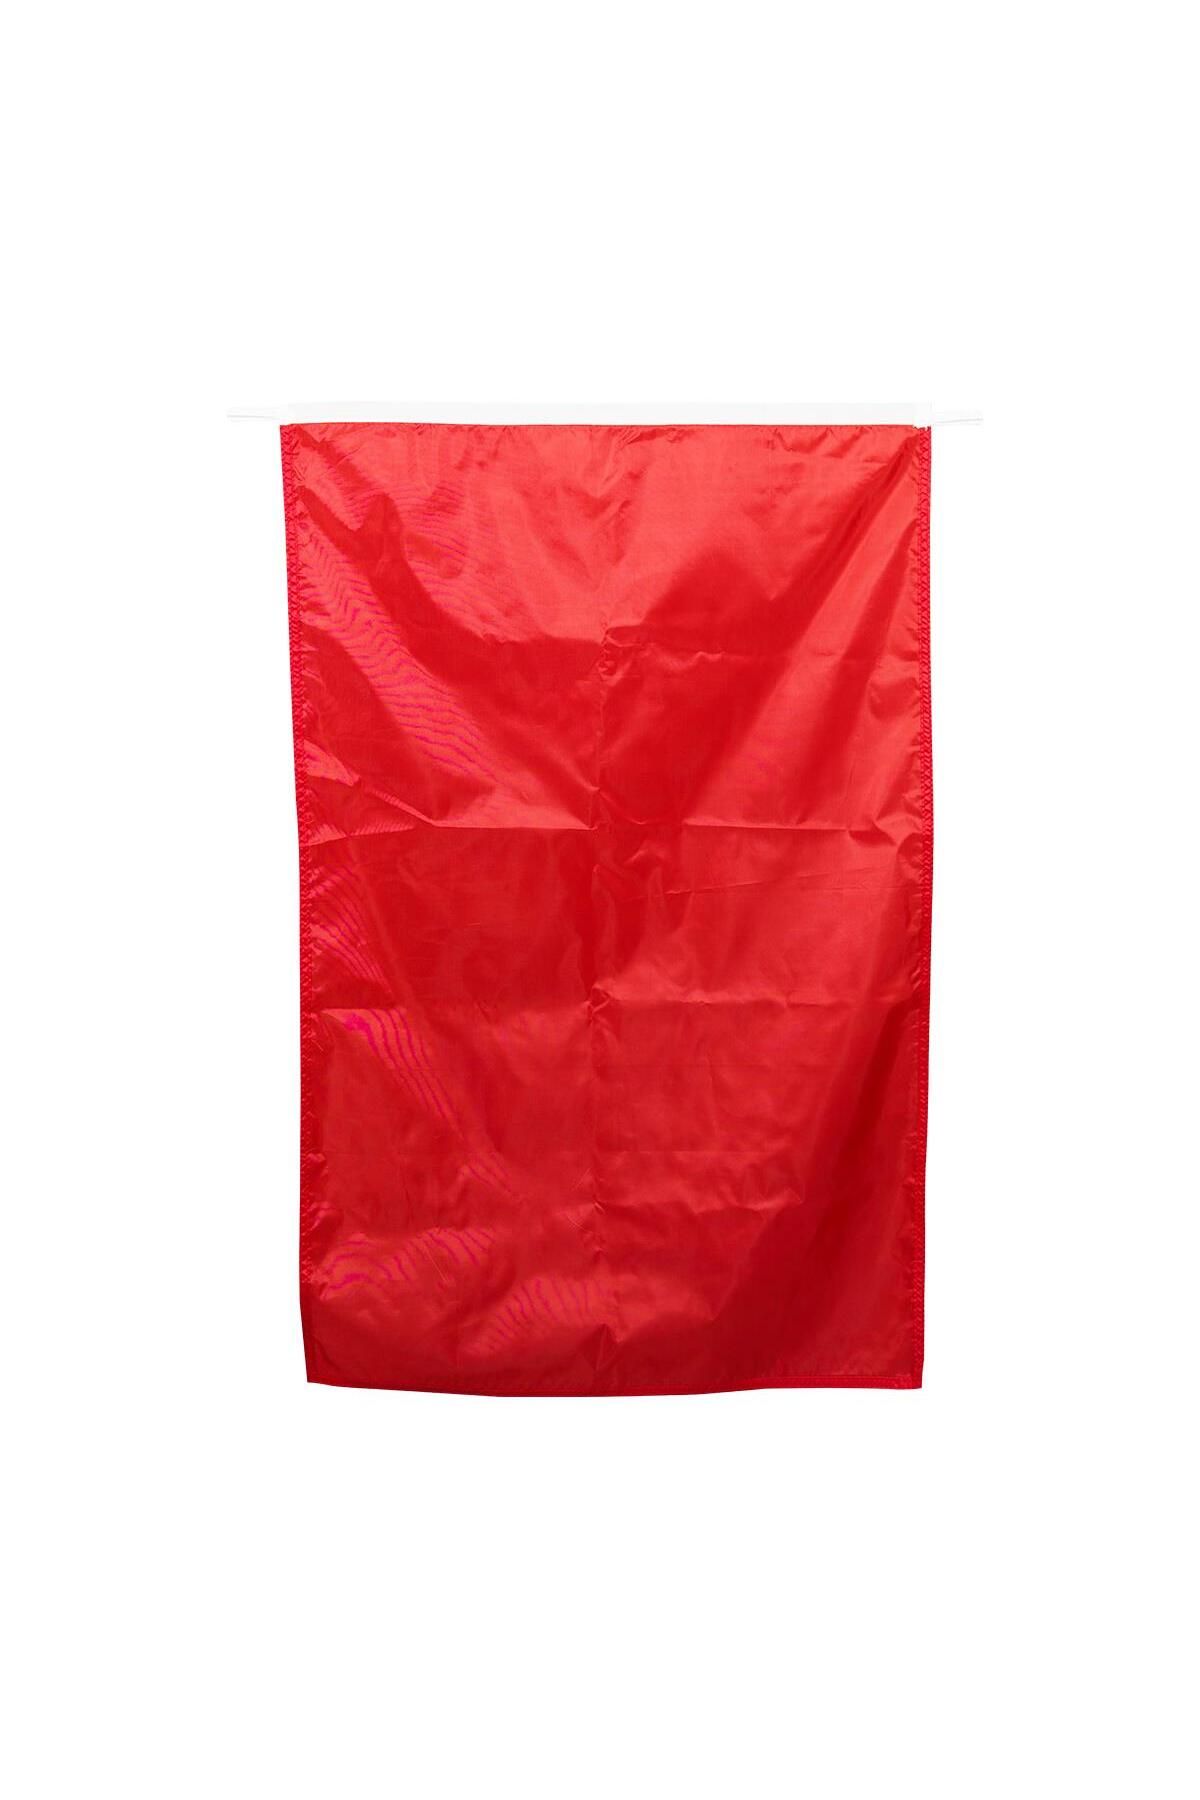 OCEANMARİNE Cankurtaran Bayrağı (kırmızı 75x100)